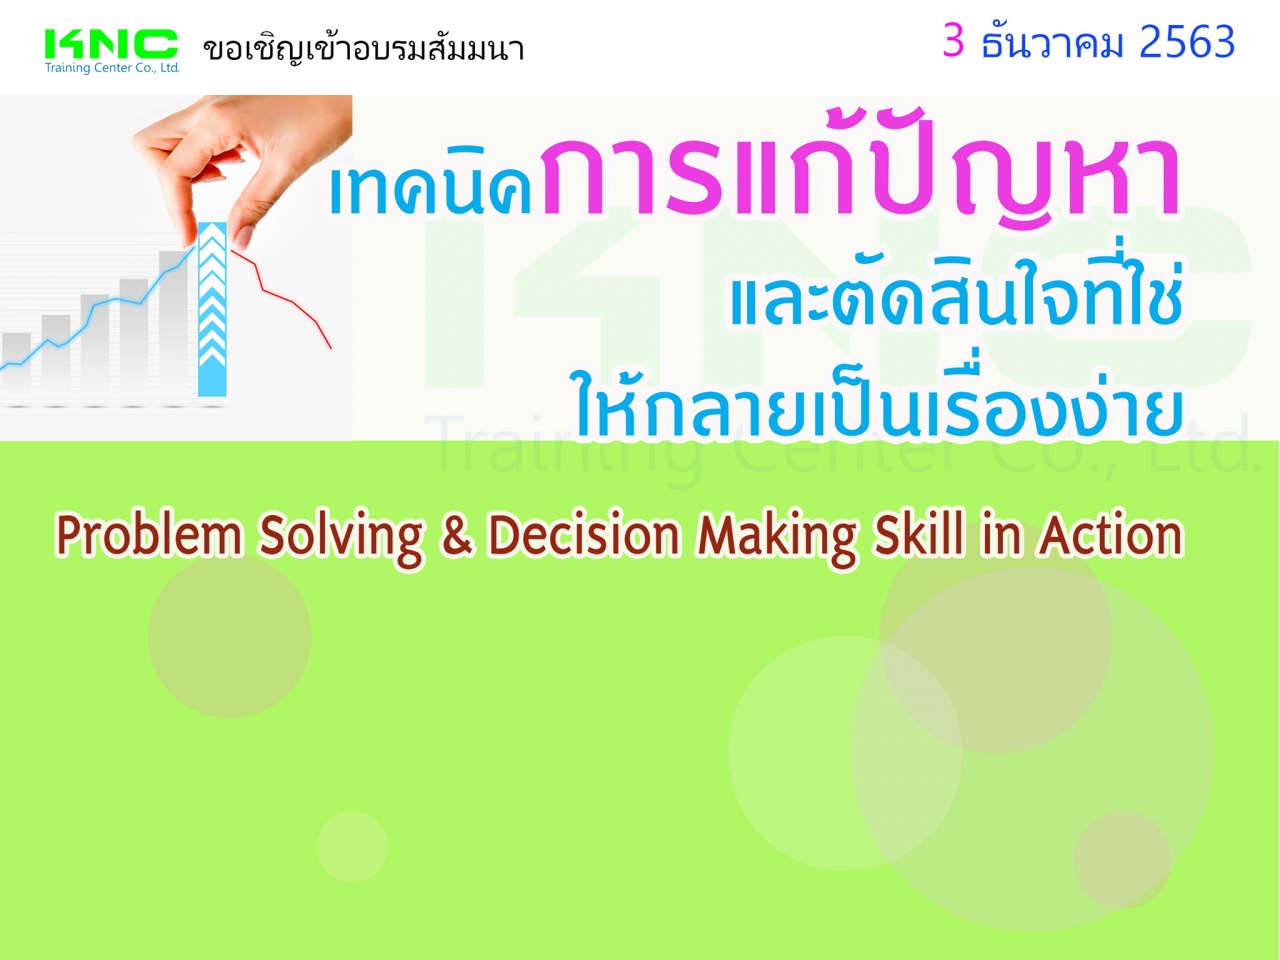 เทคนิคการแก้ปัญหาและตัดสินใจที่ใช่ให้กลายเป็นเรื่องง่าย (Problem Solving & Decision Making Skill in Action)